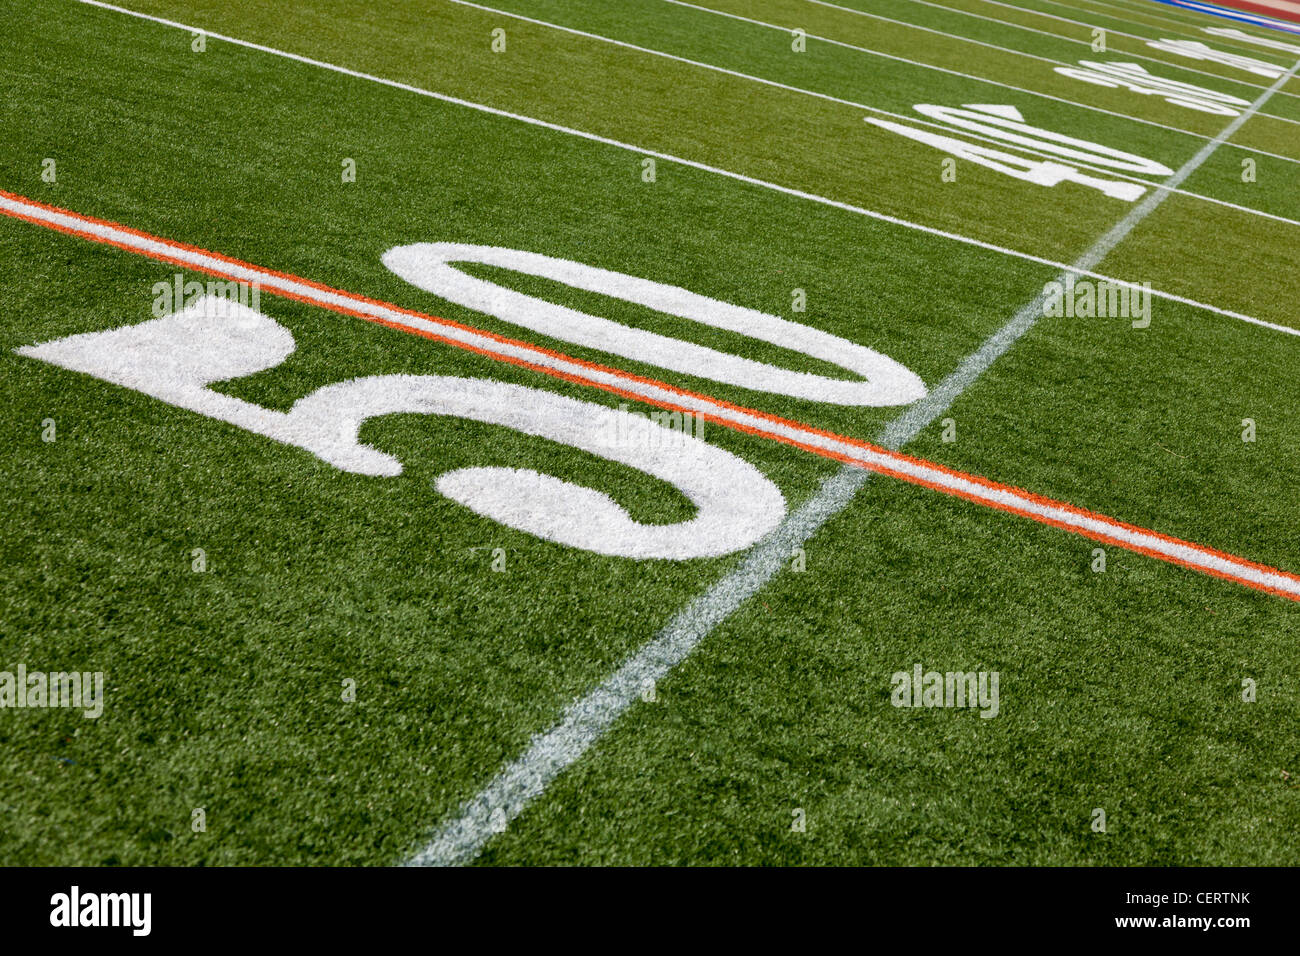 Die 50 harte Linie auf eine amerikanische Fußballplatz mit Kunstrasen Stockfoto